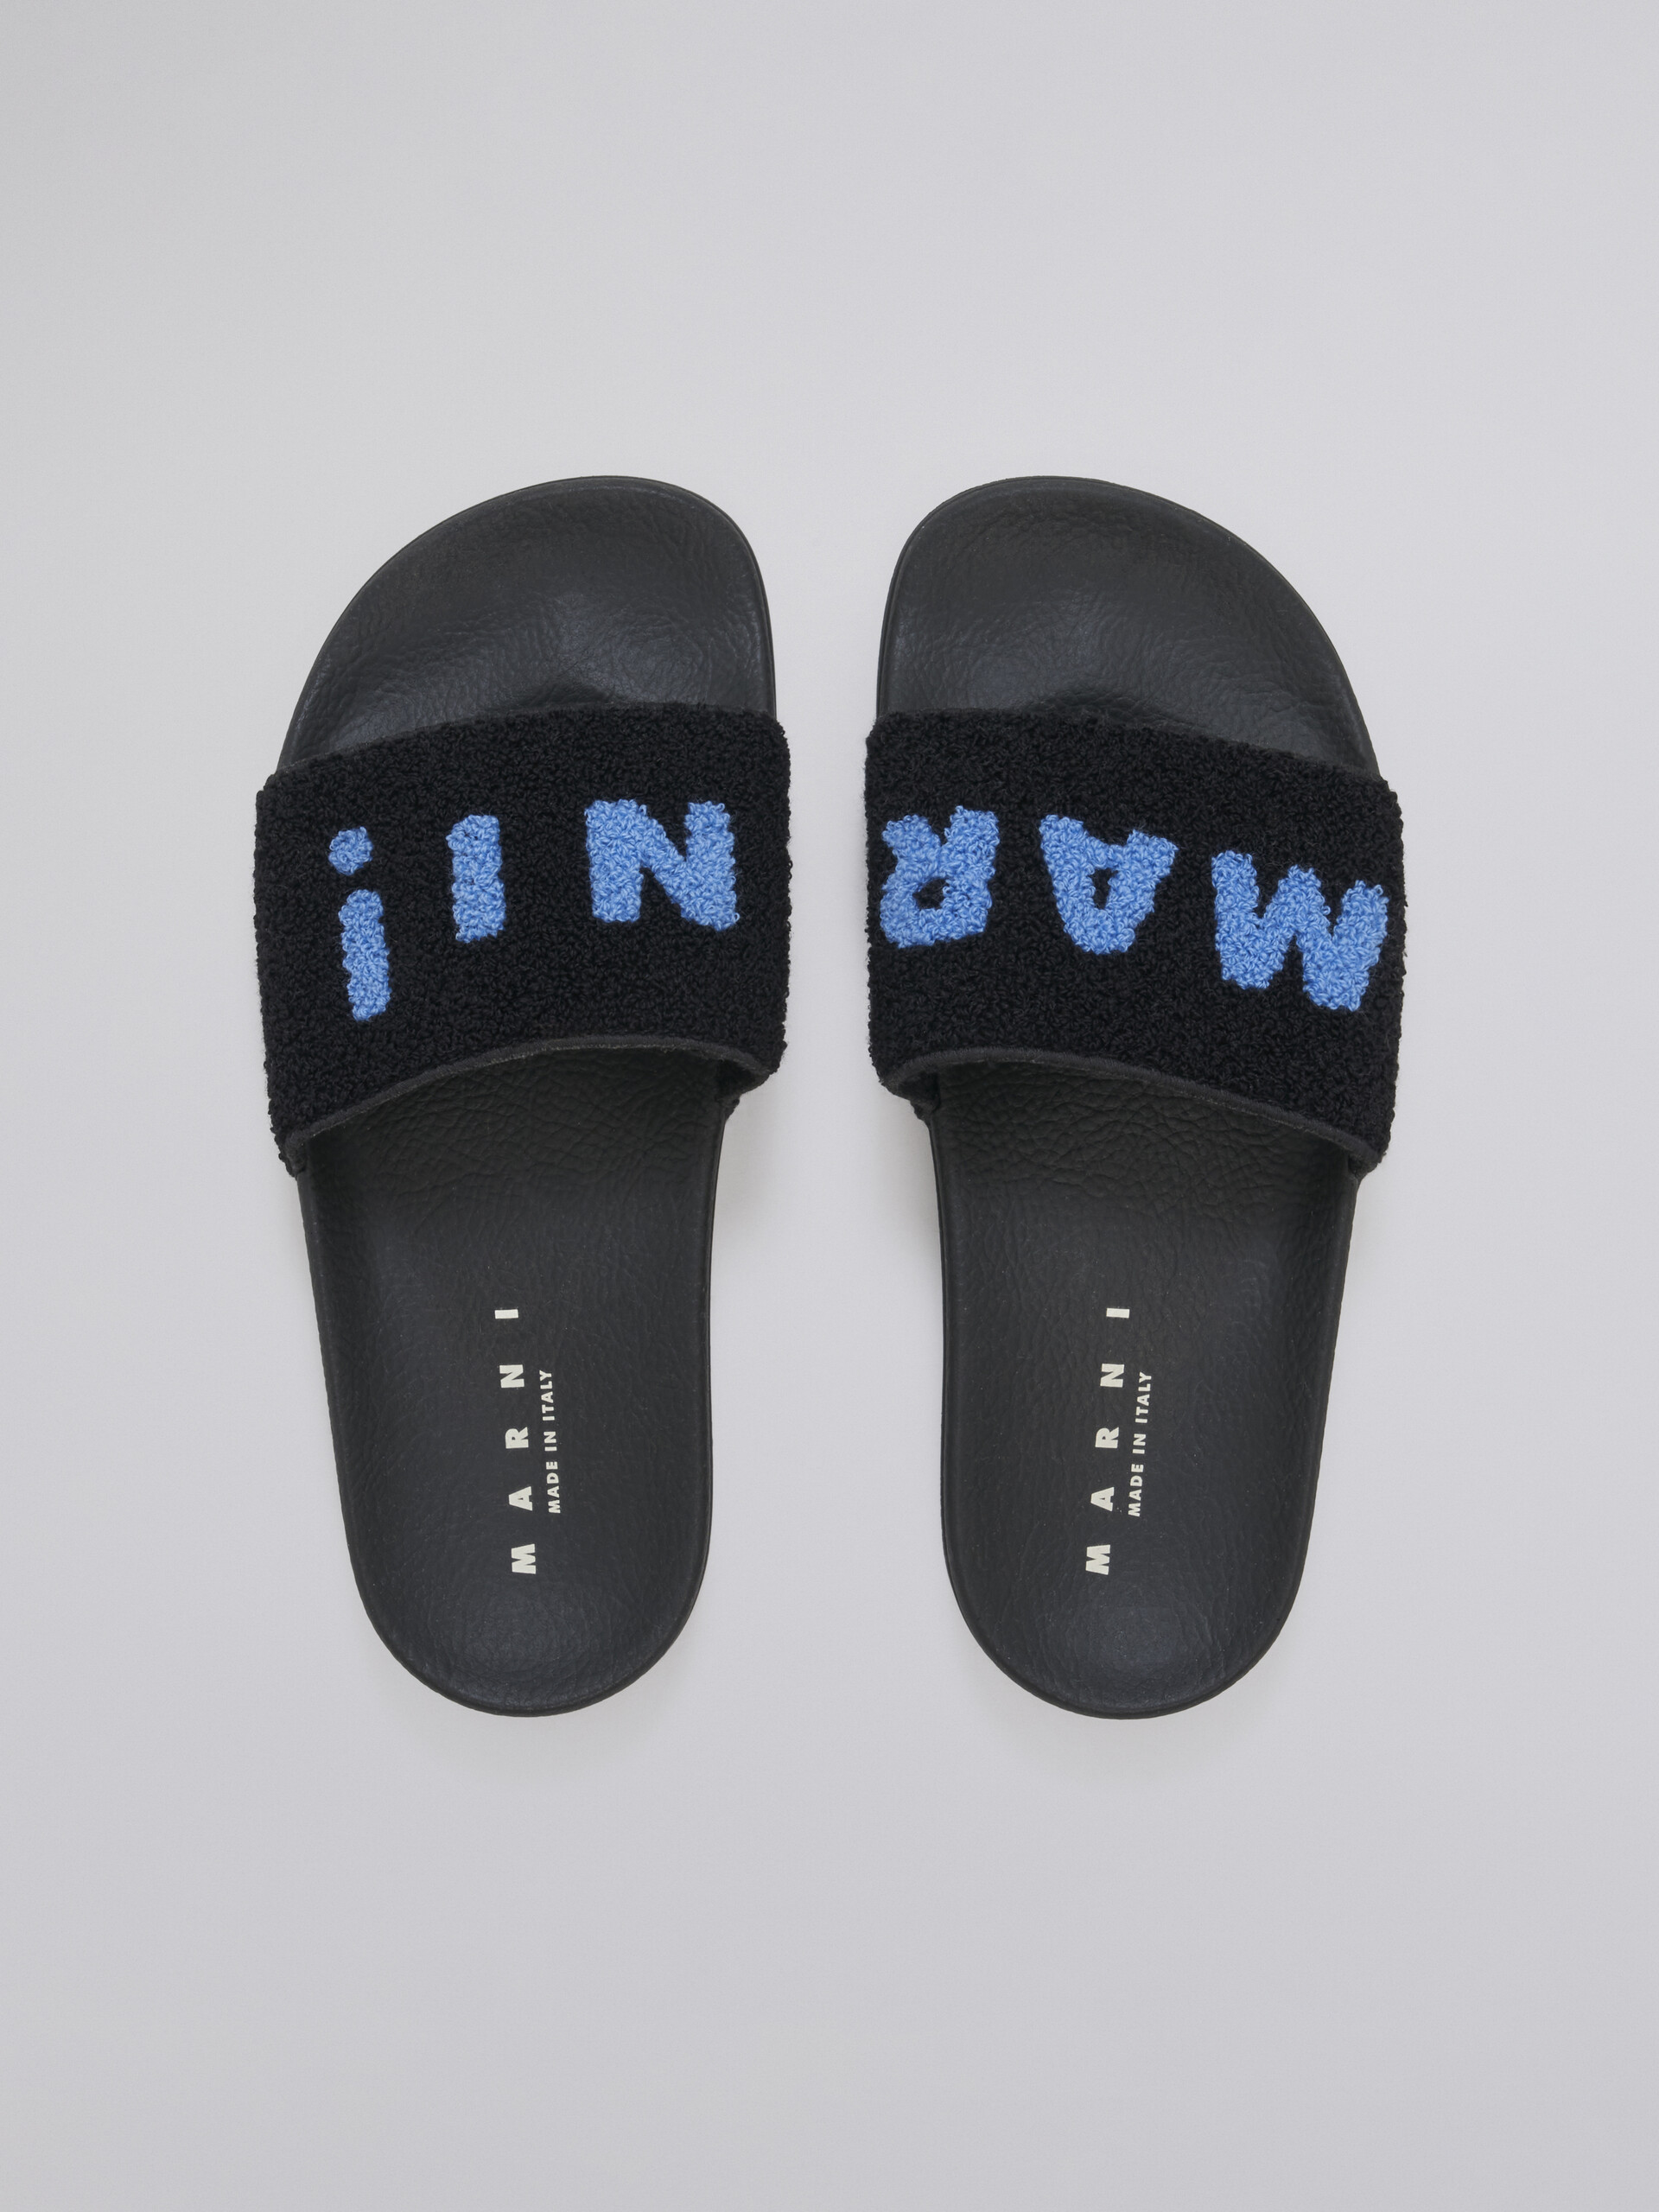 Sandalo in gomma con fascia in spugna nero e blu - Sandali - Image 4